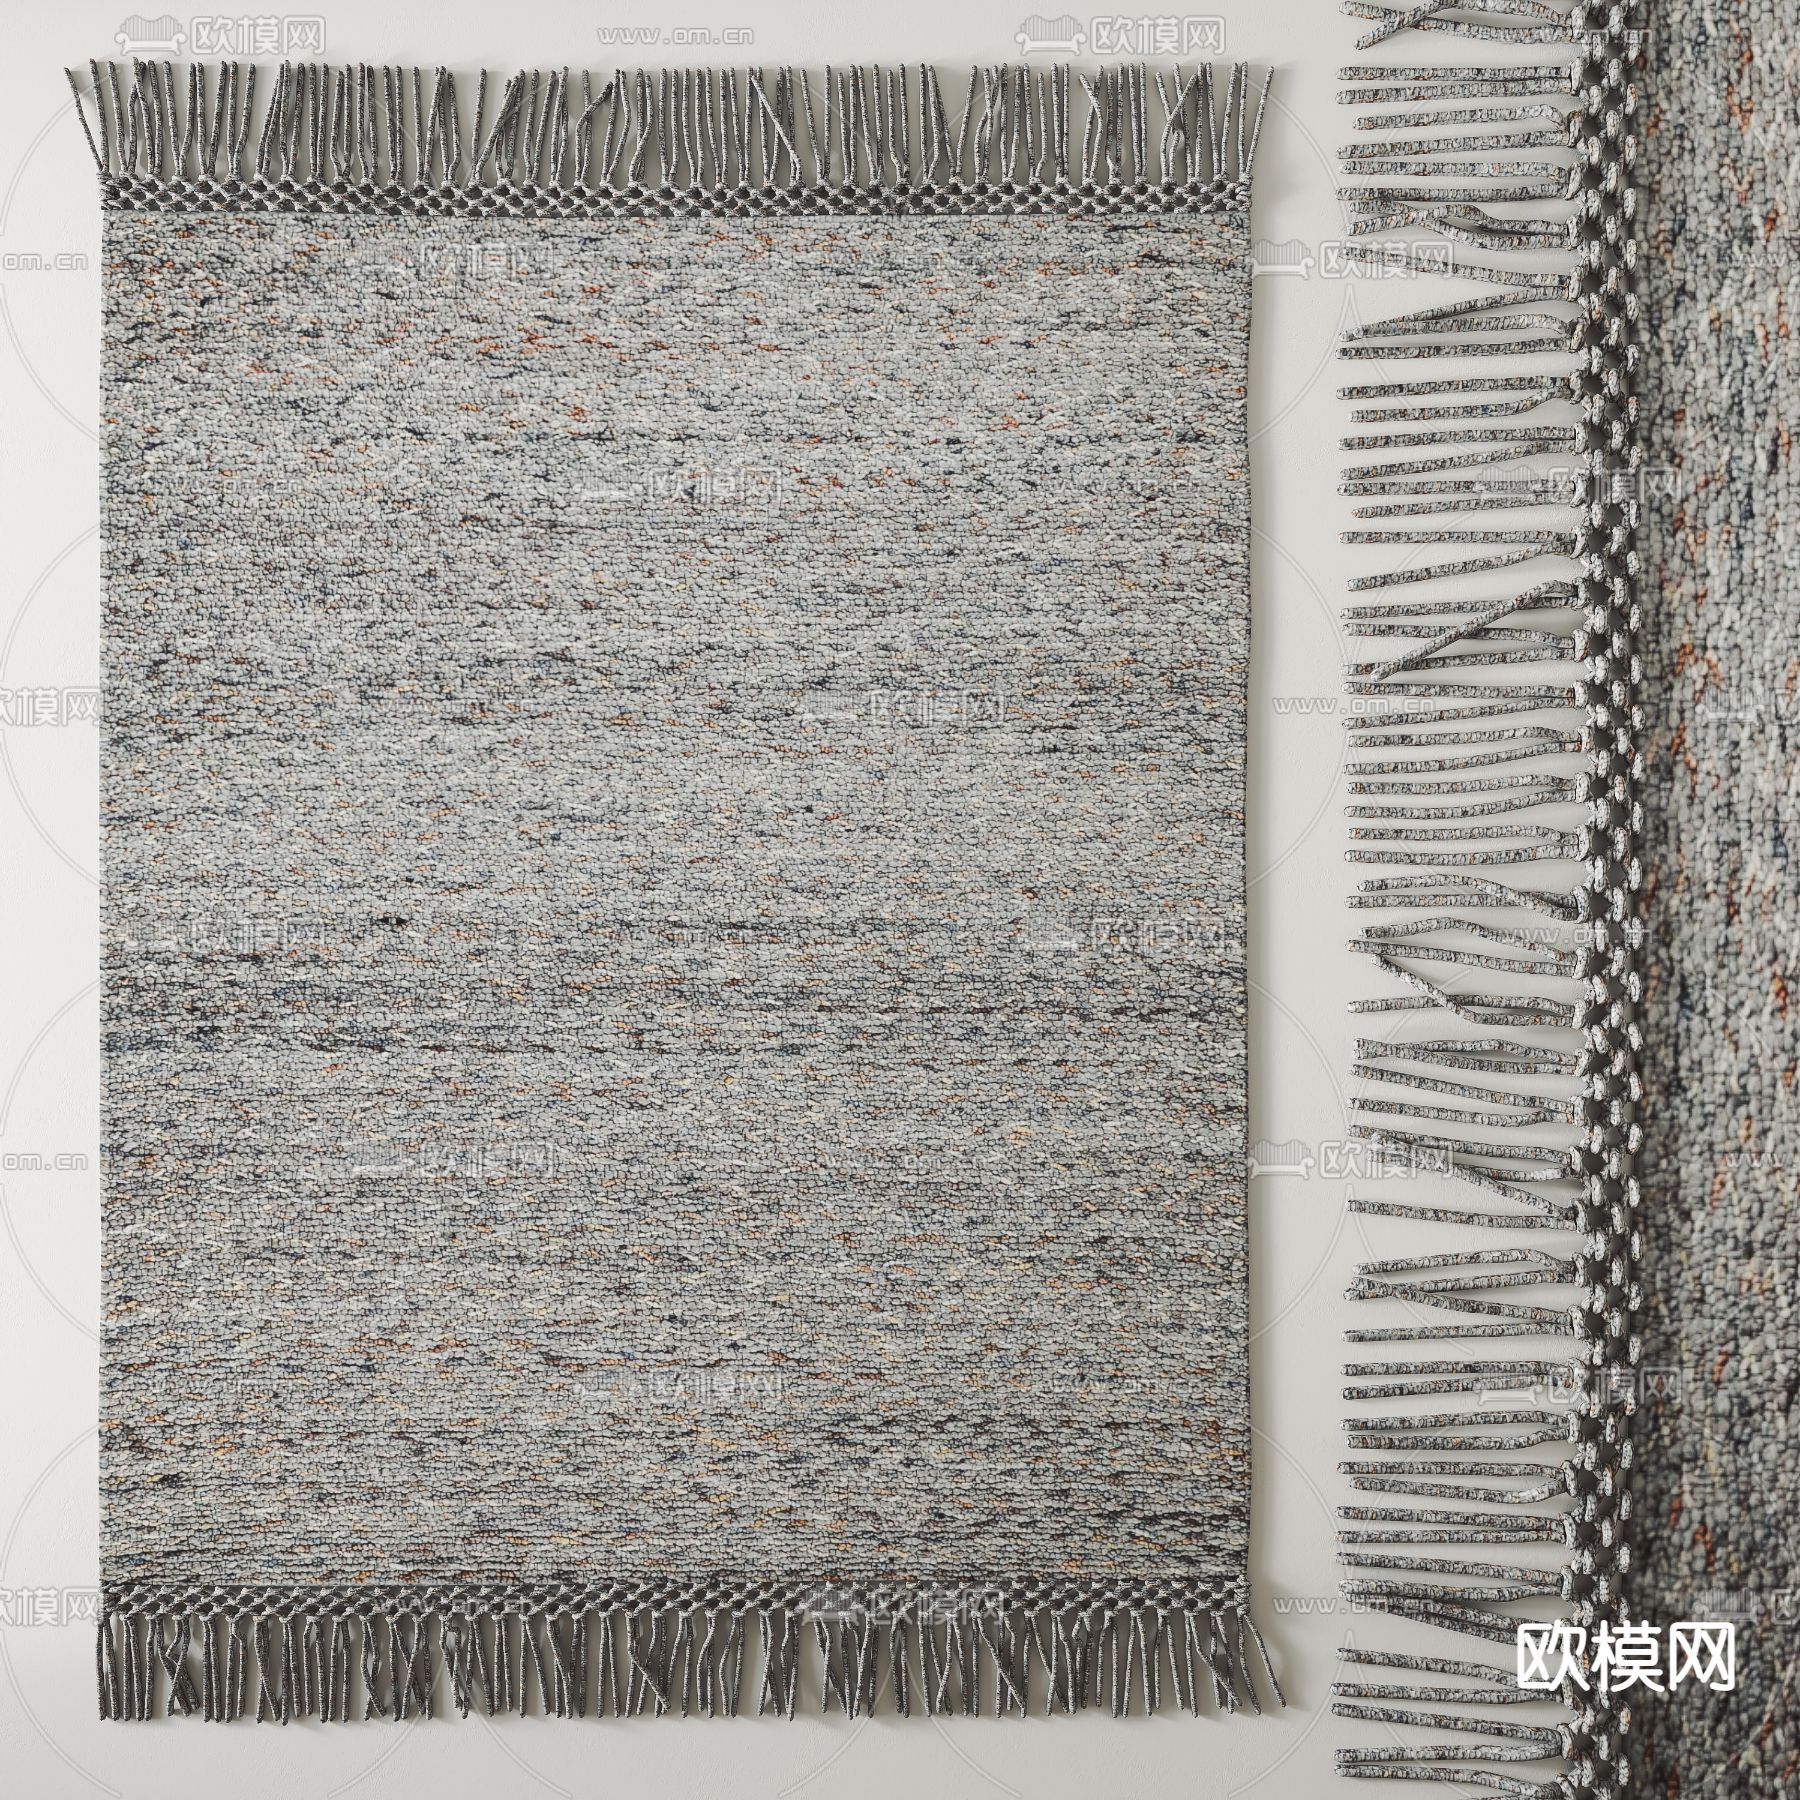 土耳其风格地毯图片-土耳其风格地毯效果图-土耳其风格地毯设计素材下载-众图网